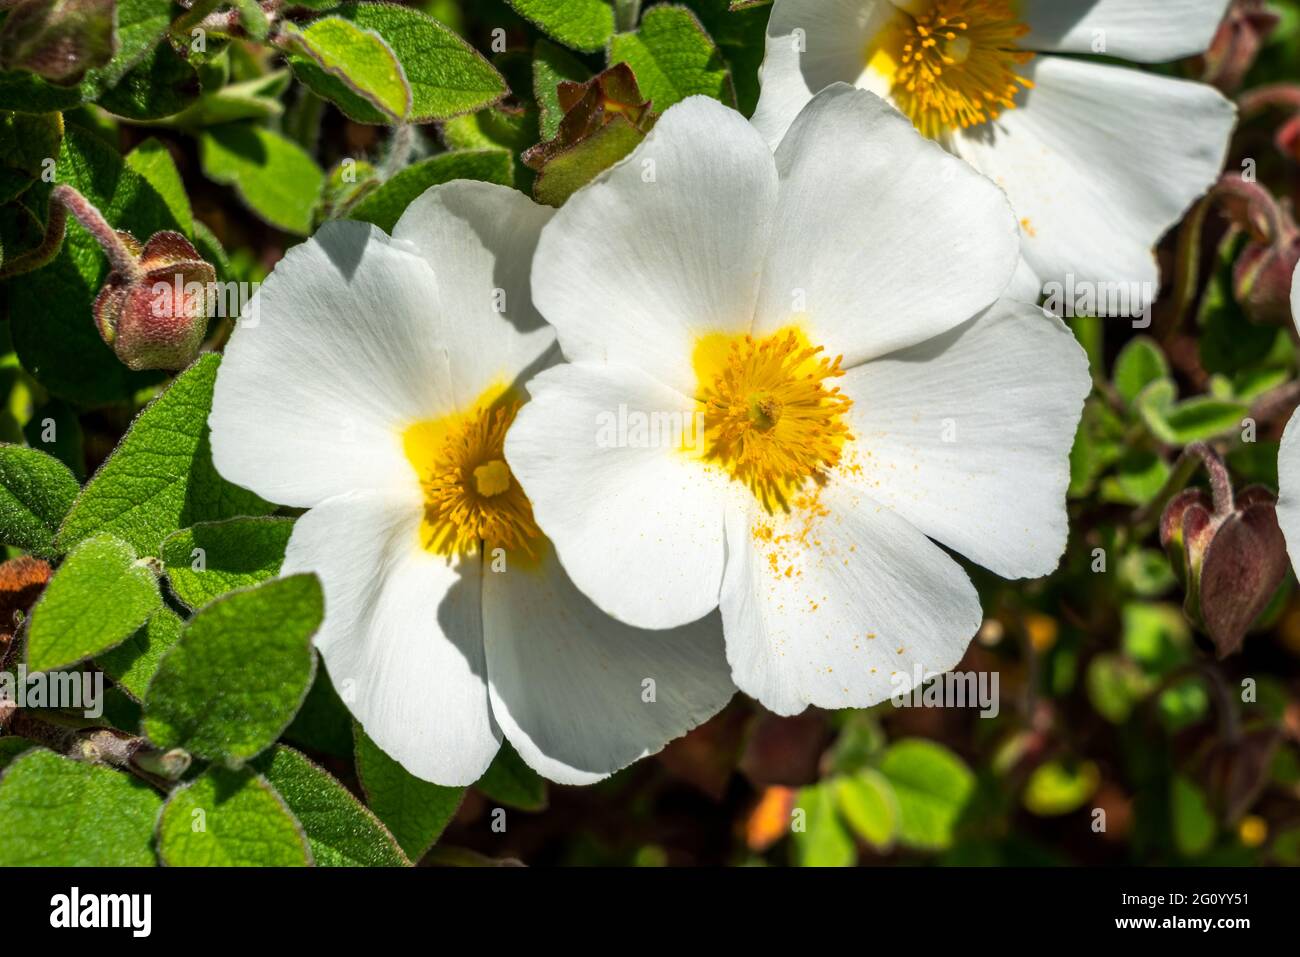 Cistus salviifolius plante arbustive compacte à fleurs d'été avec une fleur blanche d'été communément connue sous le nom de rose rocheuse à feuilles de sauge, image de stock photo Banque D'Images